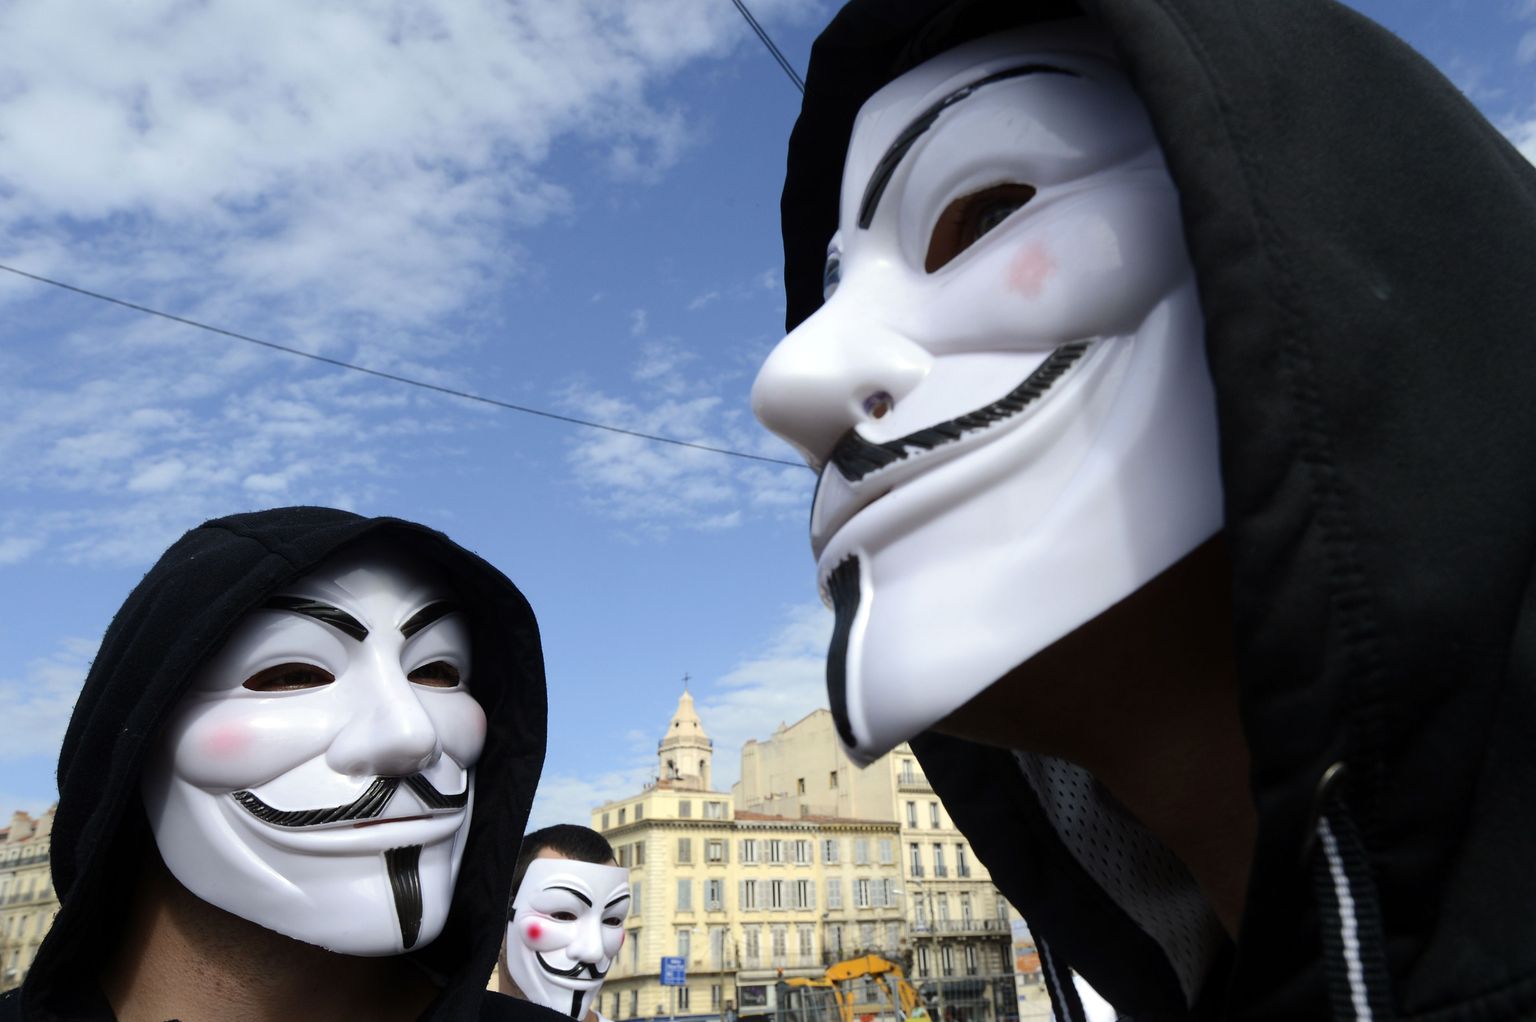 Portestiliikumiste sümboliks saanud Guy Fawkes'i maskid